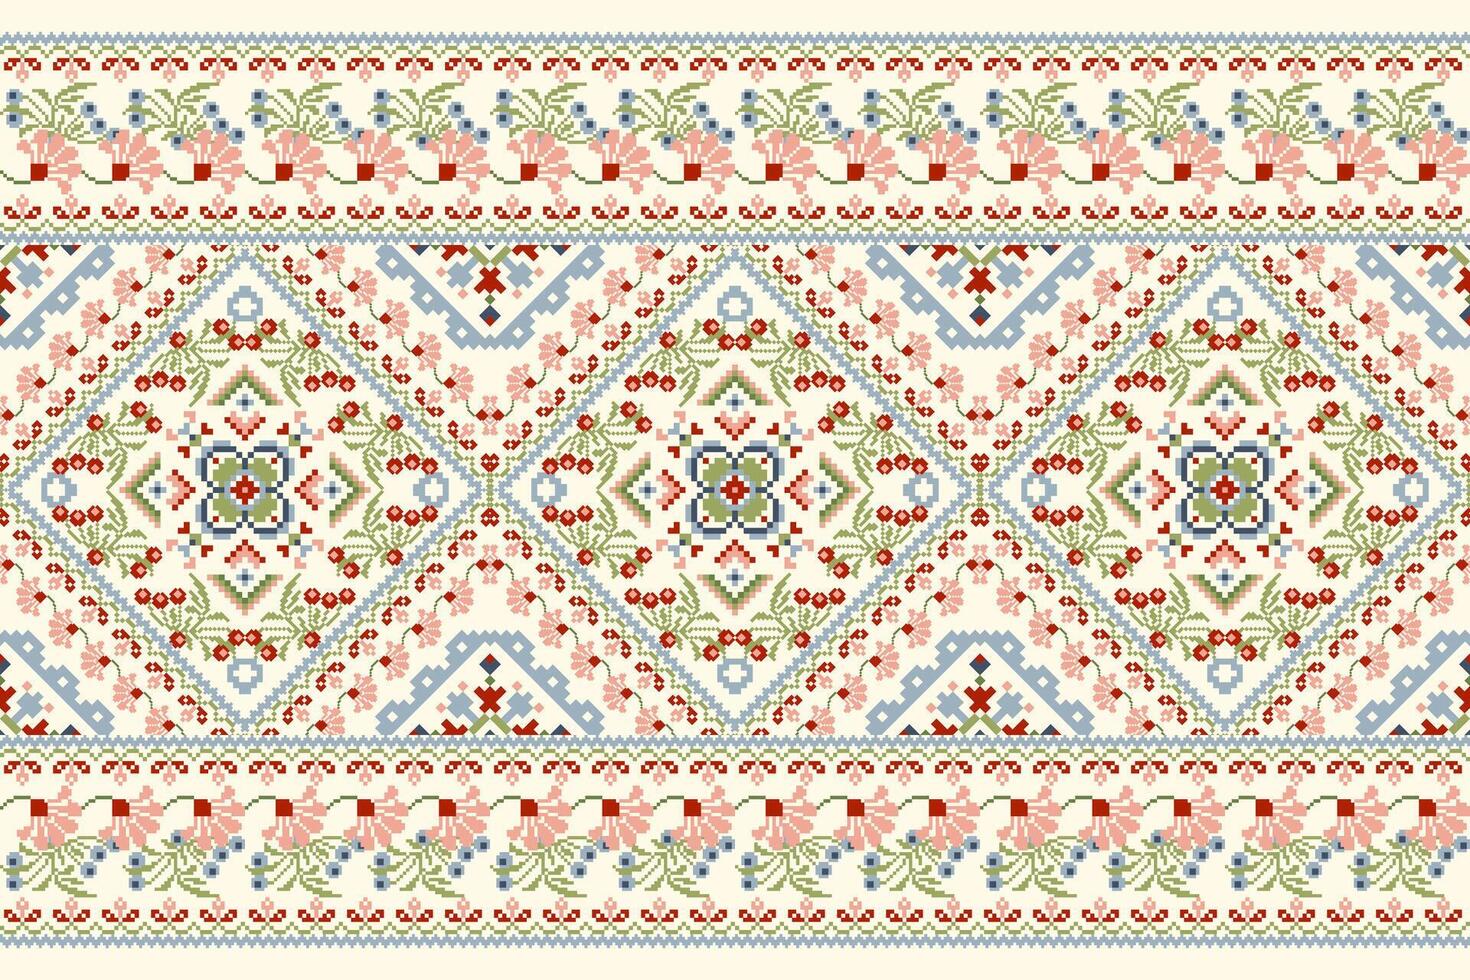 geometrisch ethnisch orientalisch Muster traditionell vektor